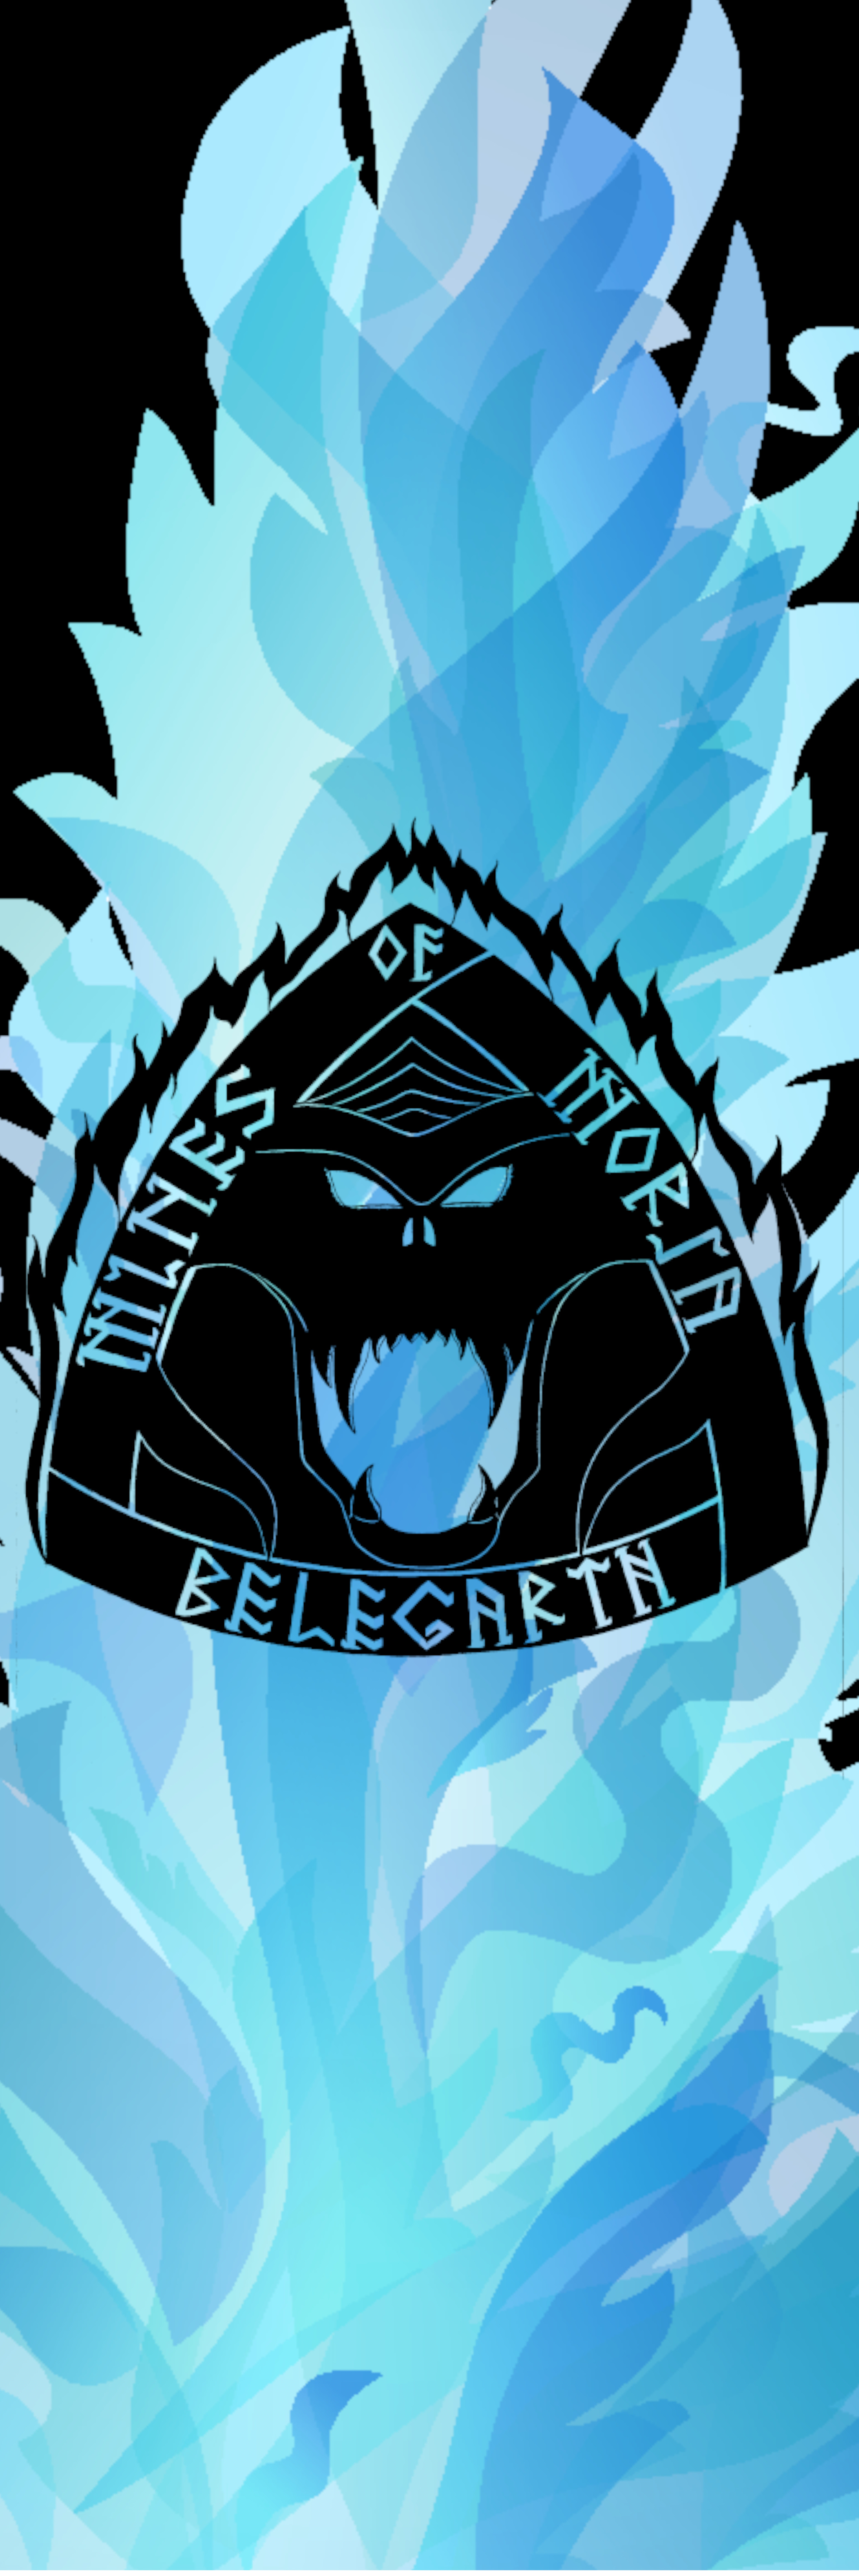 Bel logo with blue flames banner.jpg